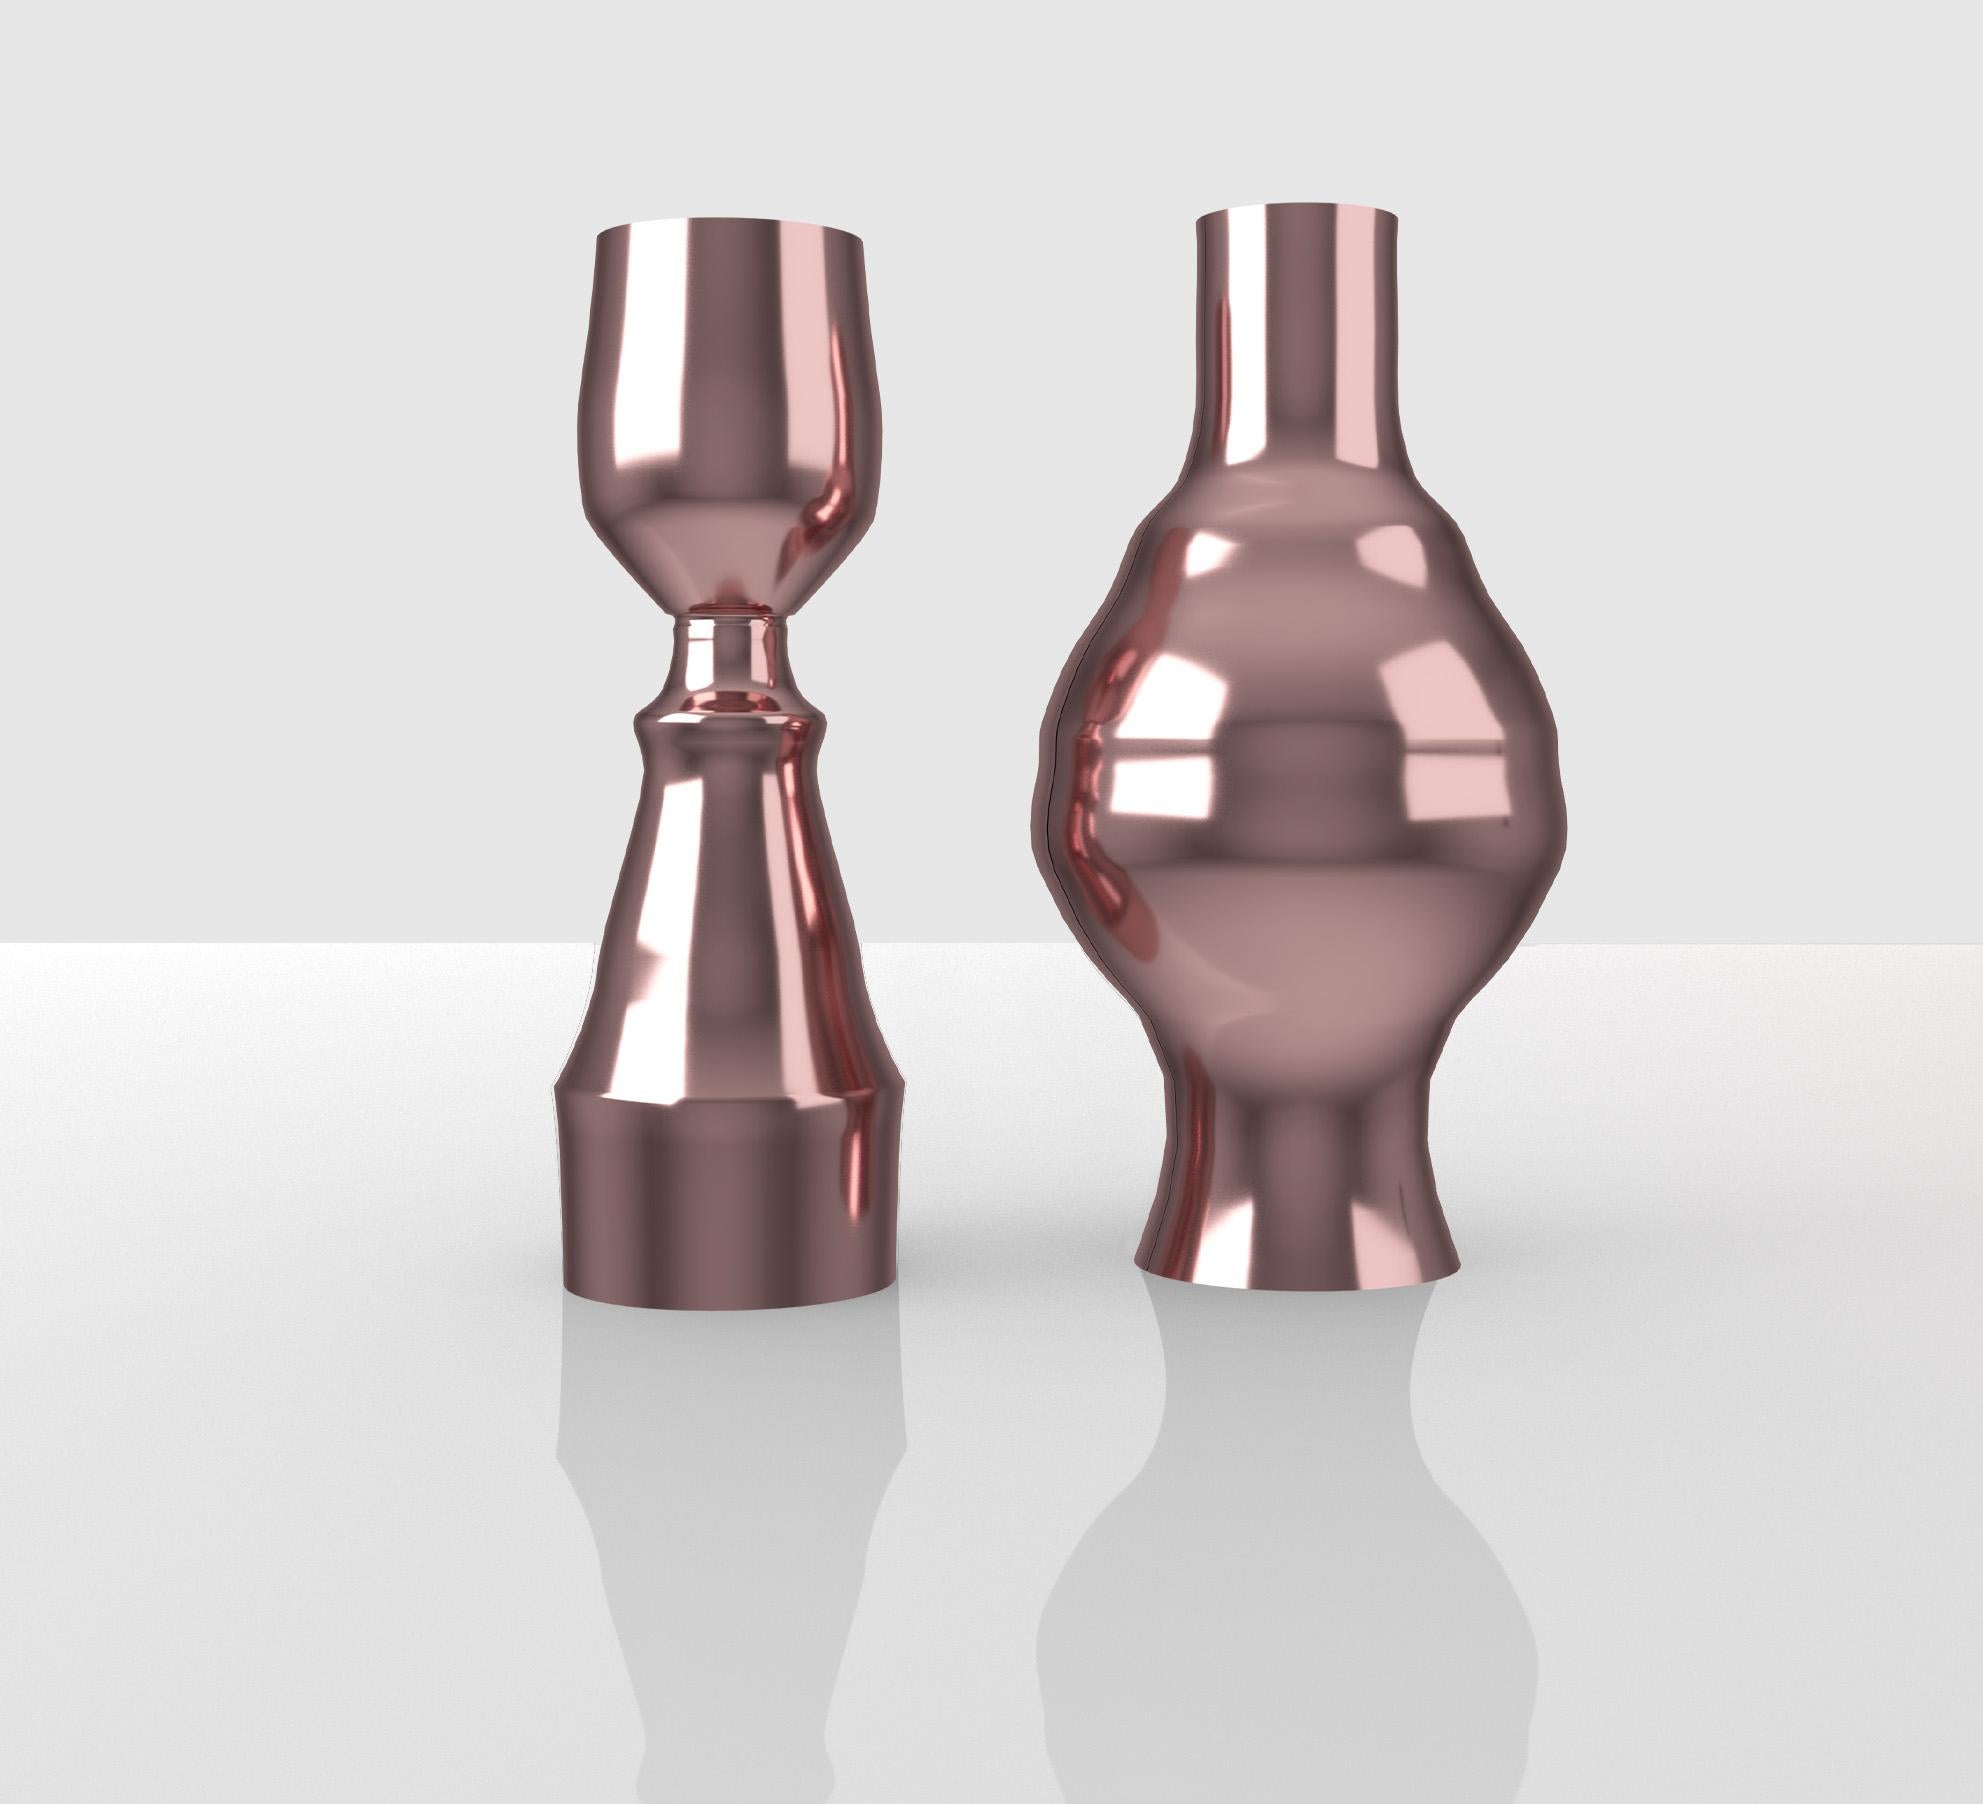 Découvrez cette paire de vases en aluminium verni, méticuleusement travaillés. Entre ces vases émerge la silhouette élégante d'une femme nue, exprimant délicatement l'essence de la féminité. C'est la juxtaposition de l'espace négatif et de la forme